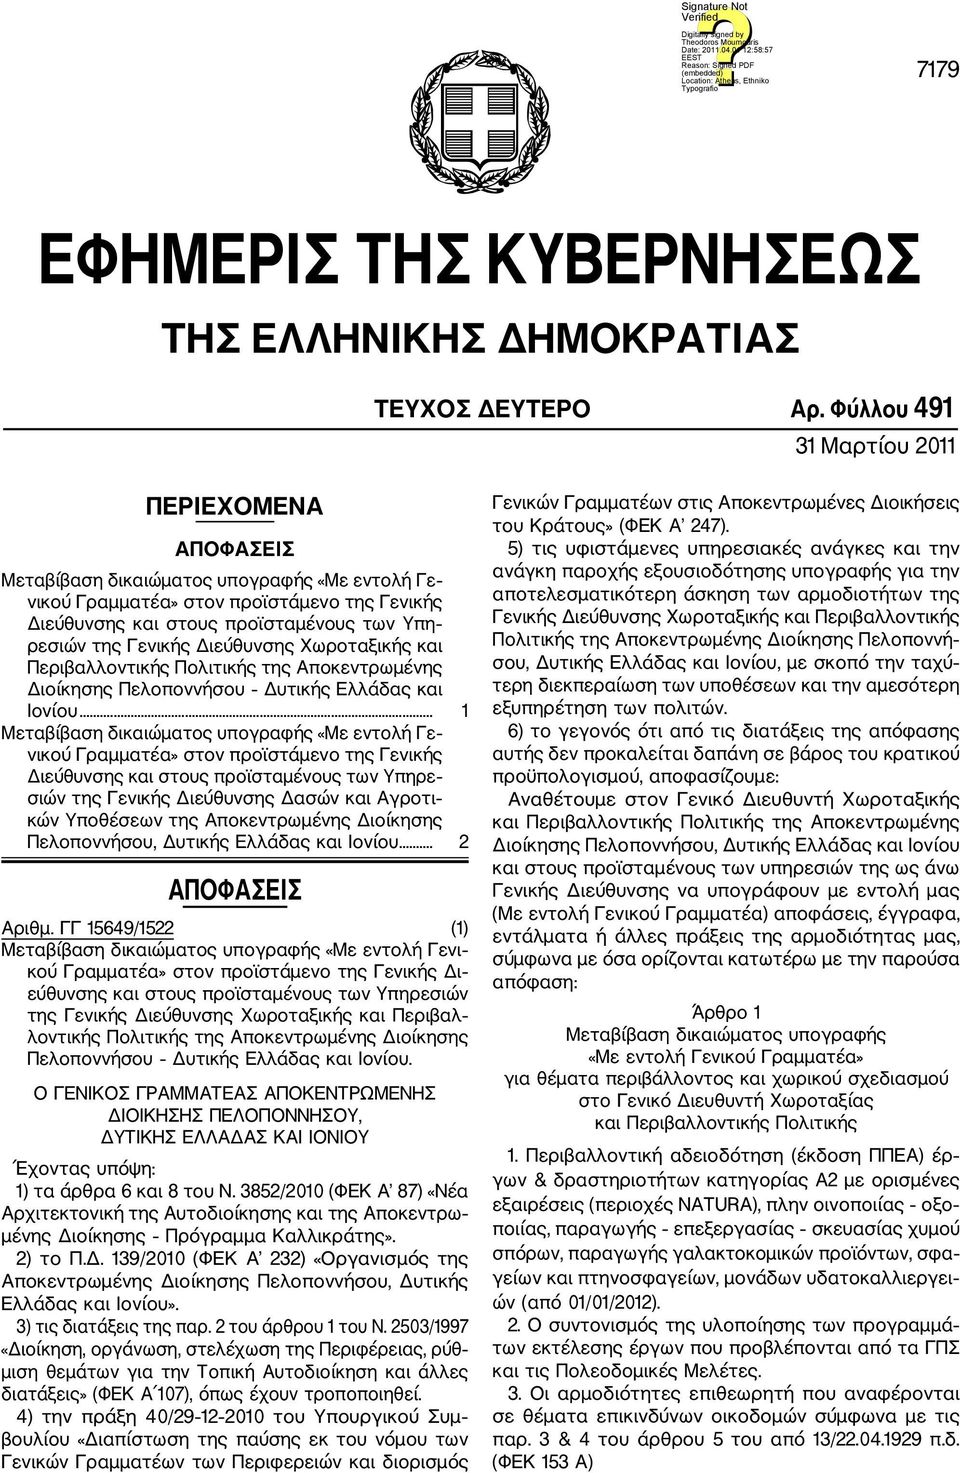 Περιβαλλοντικής Πολιτικής της Αποκεντρωμένης Διοίκησης Πελοποννήσου Δυτικής Ελλάδας και Ιονίου.